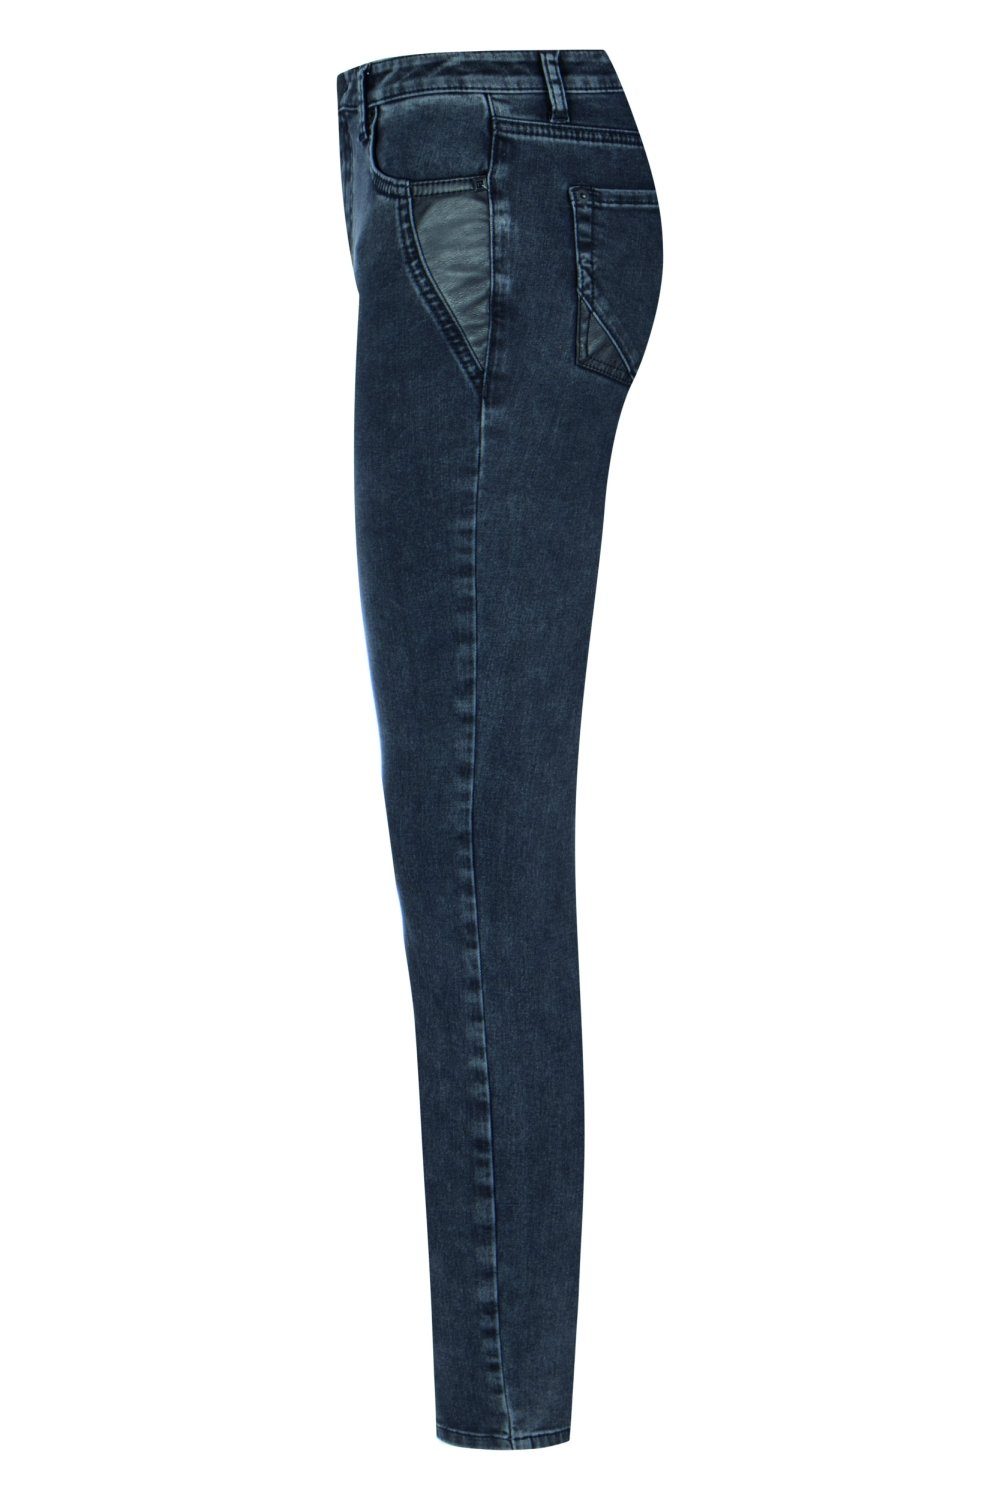 Damen Jeans Raffaello Rossi 5-Pocket-Jeans Jane Leather